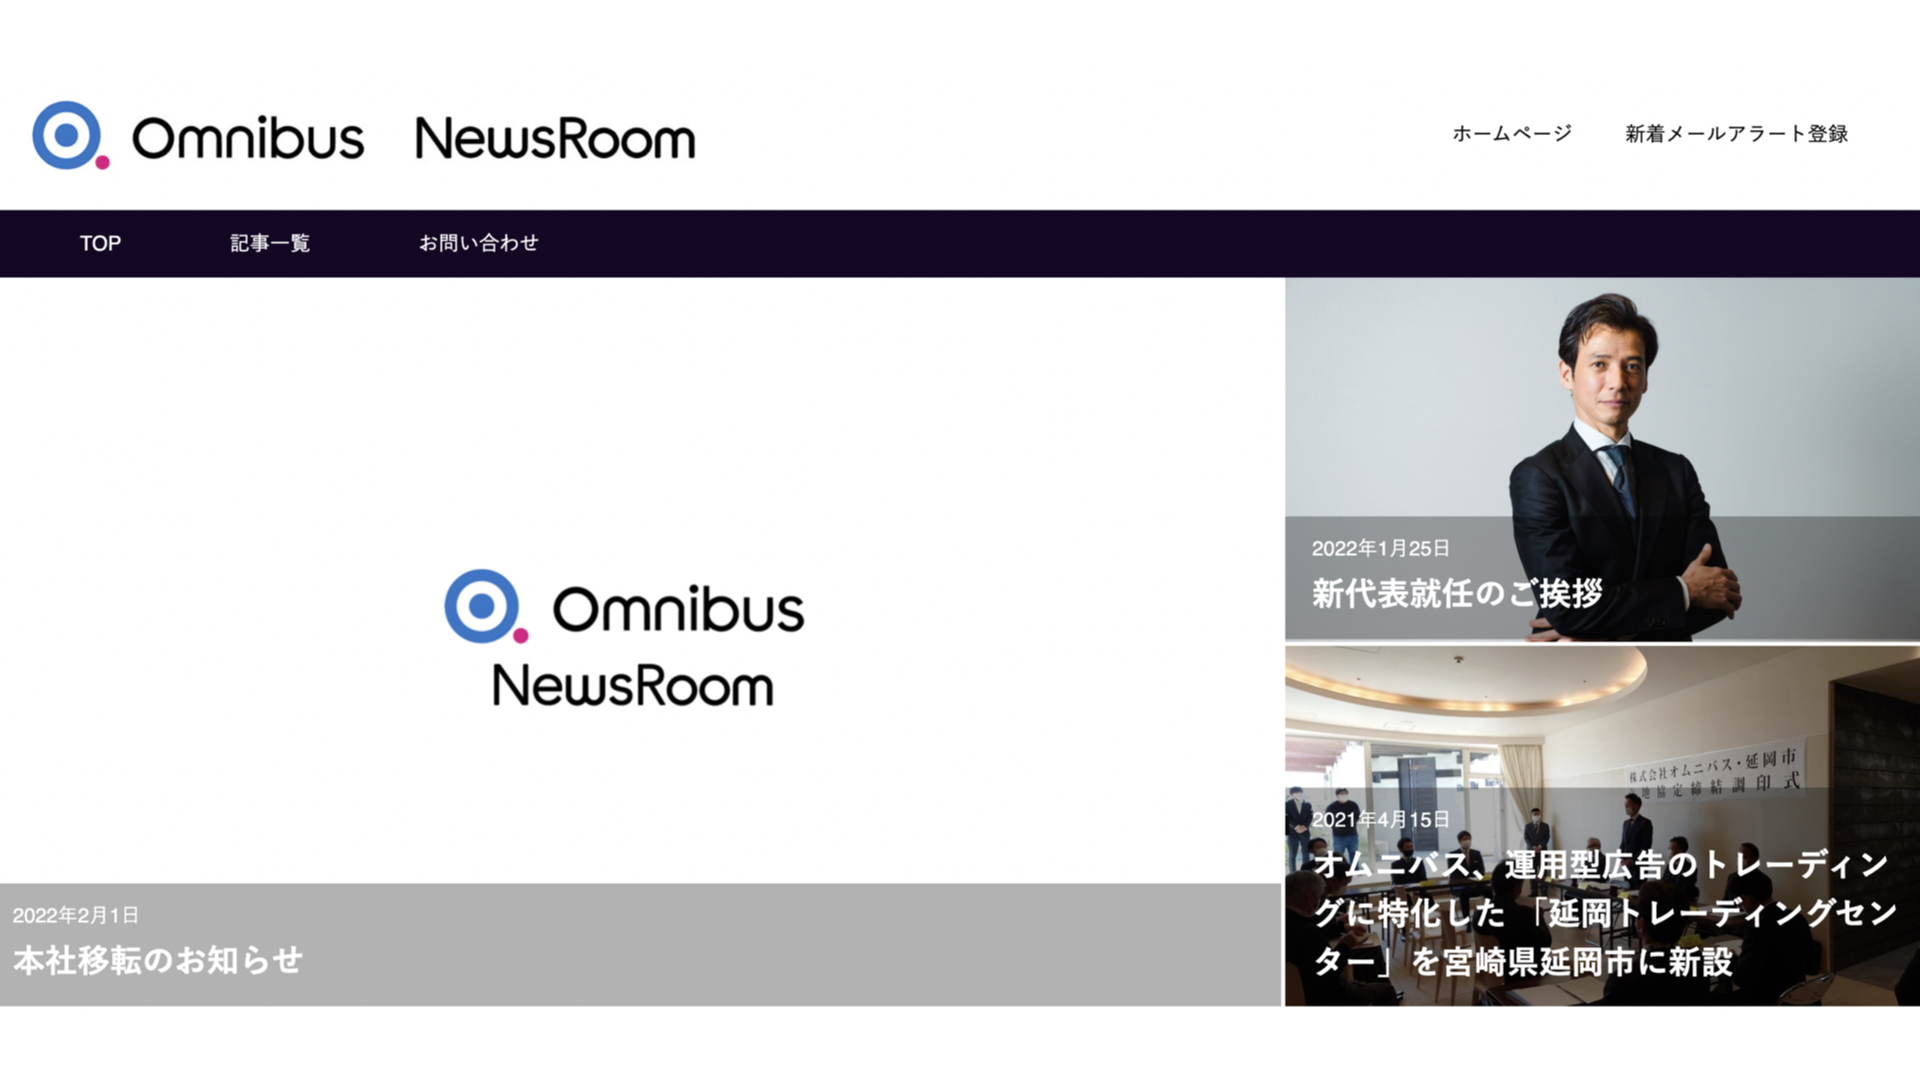 ２月１日、デジタルマーケティングサービスのオムニバスがニュースルームを開設